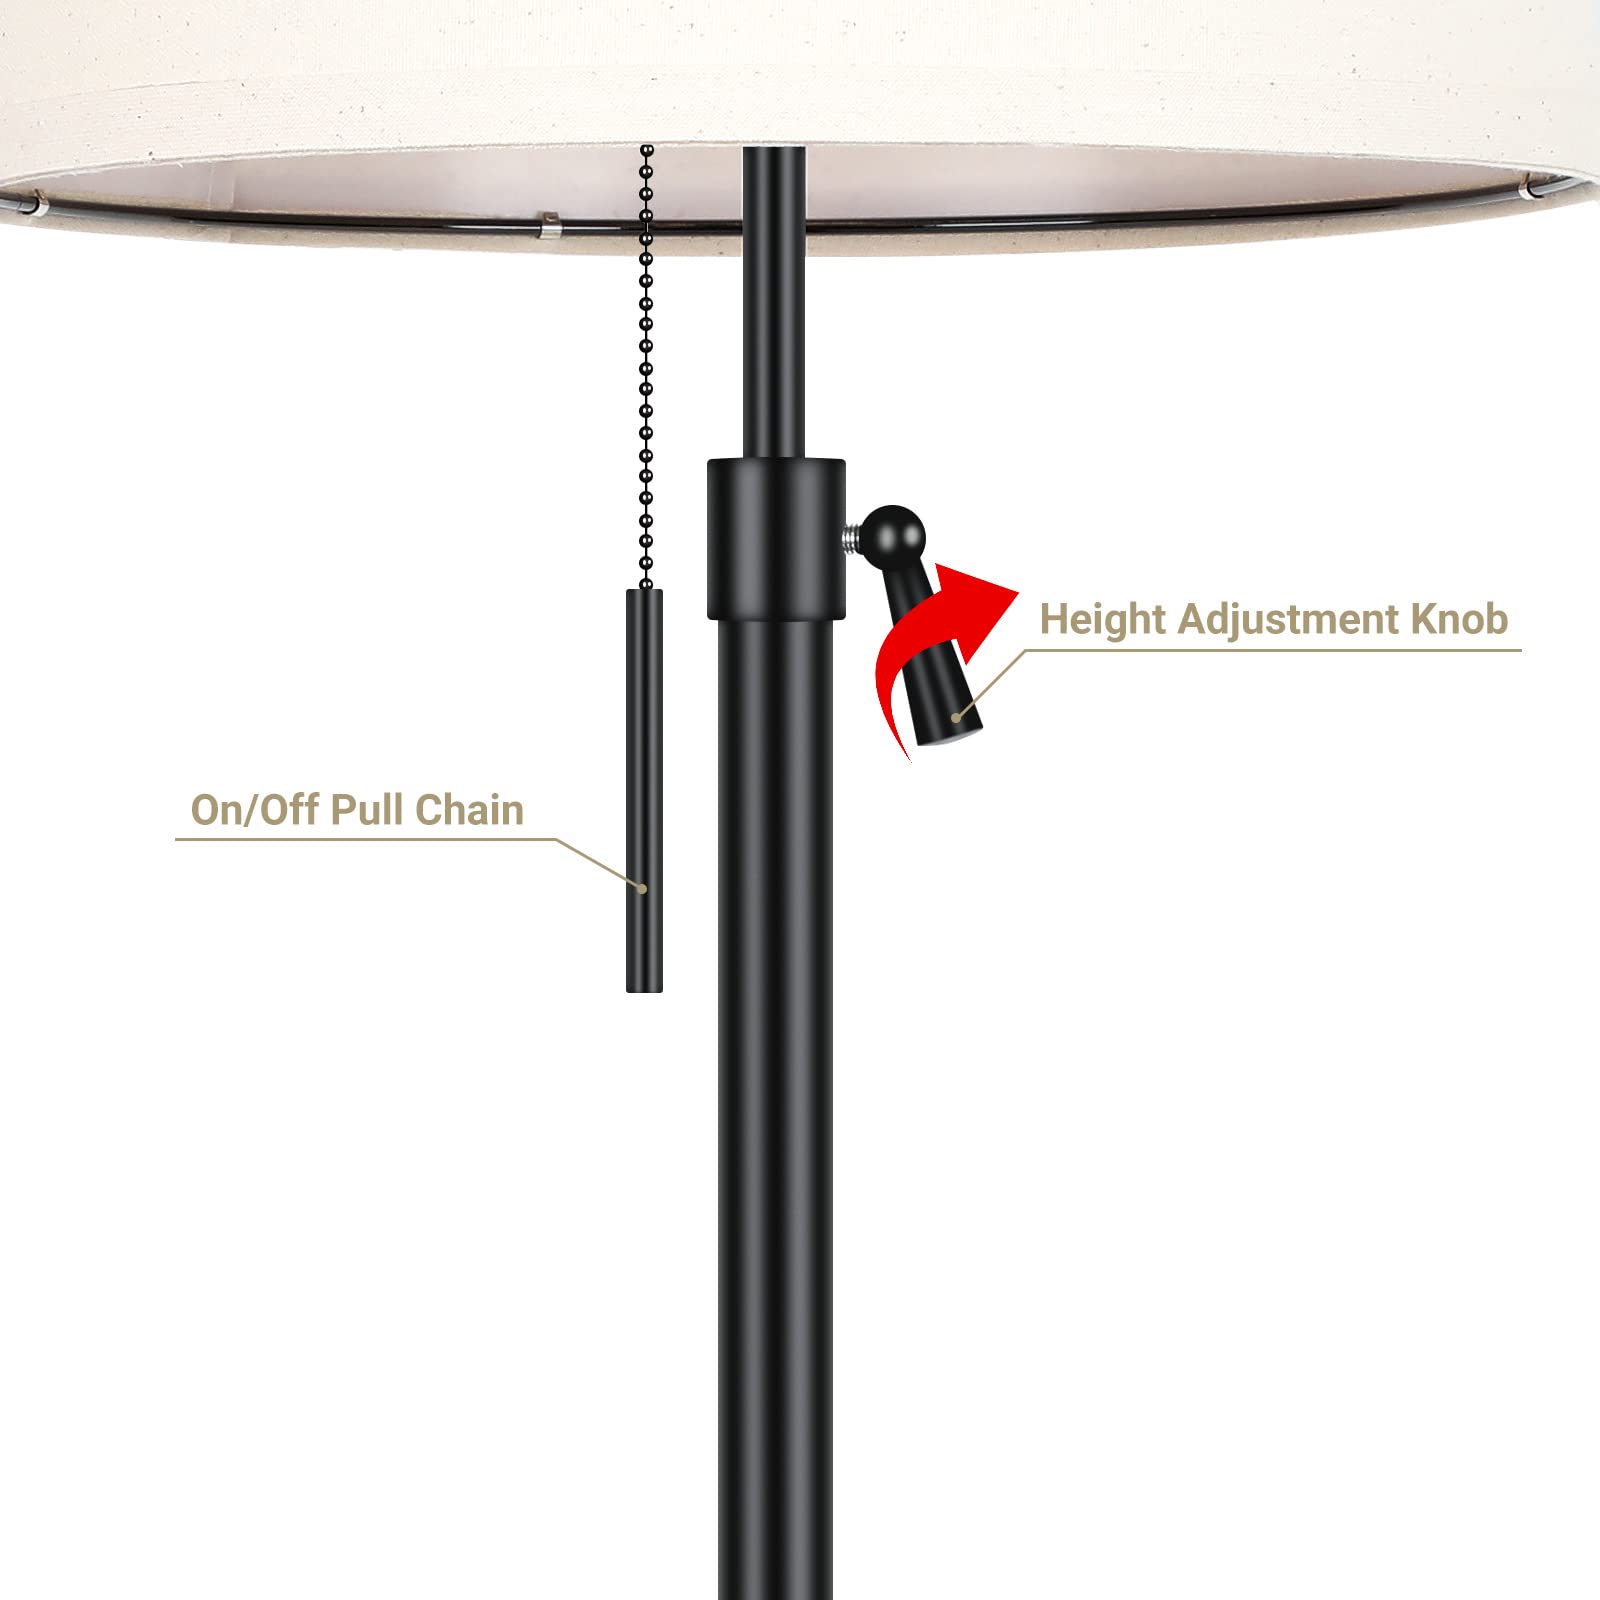 Black Bedside Table Lamps Set of 2 - 22